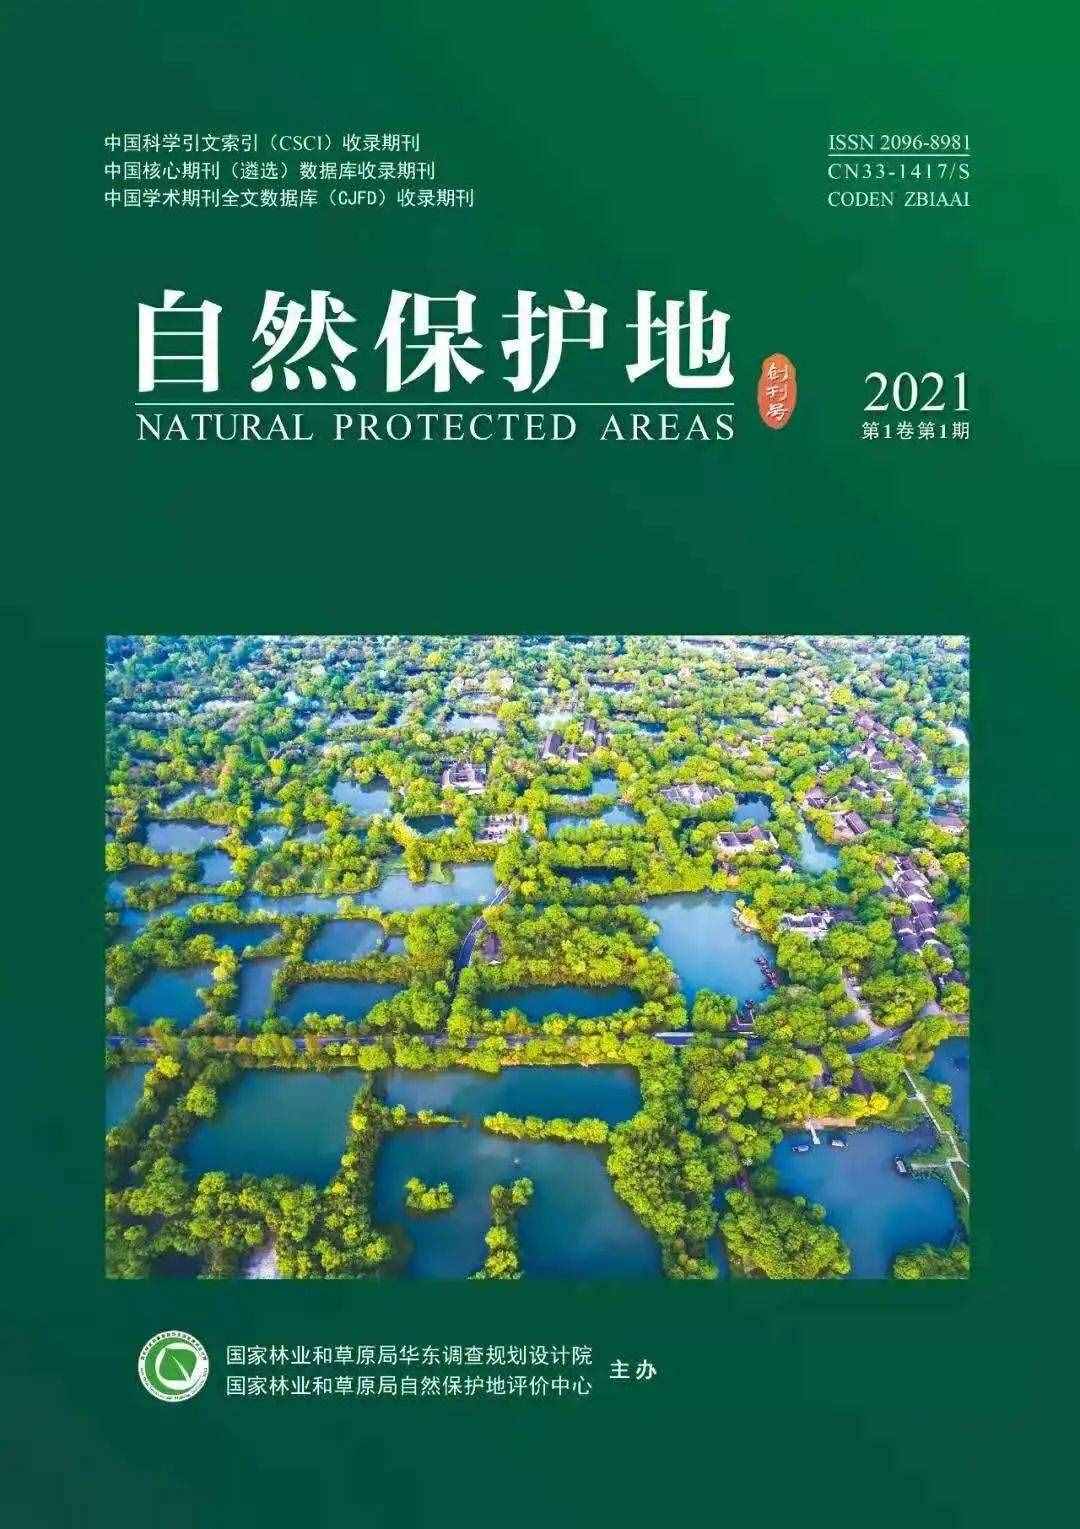 西溪湿地登上《自然保护地》创刊号！